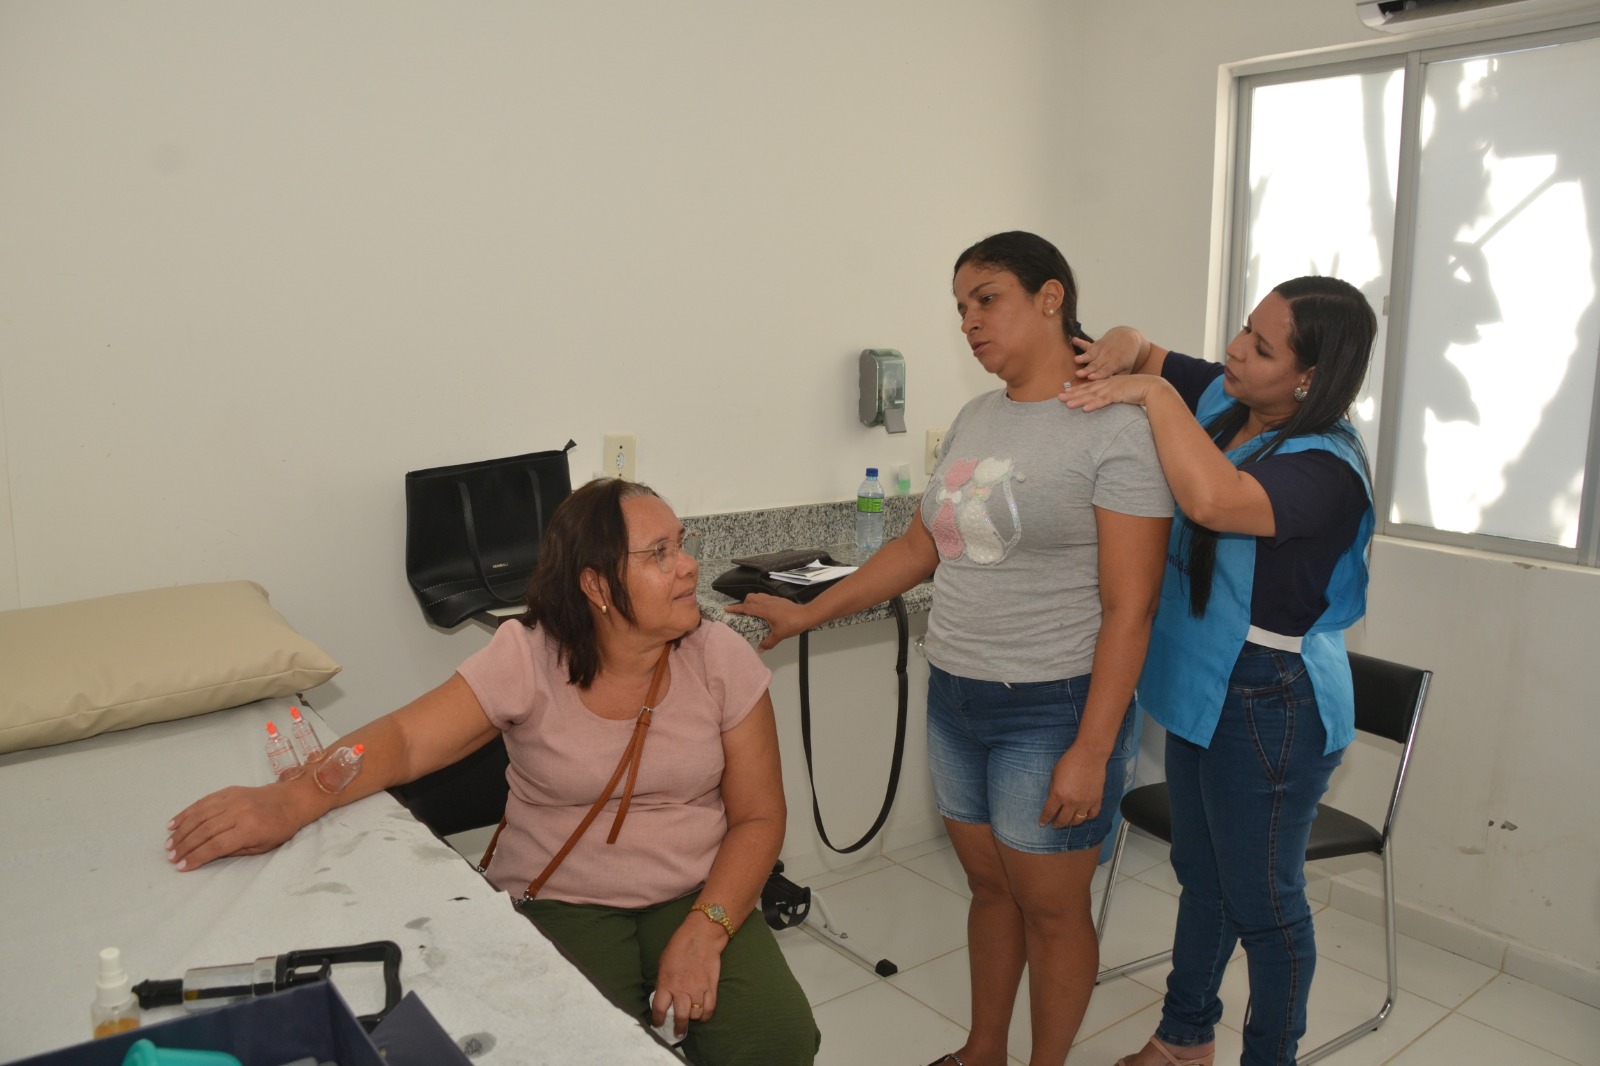 Feira-de-Saude-na-Comunidade-12 Feira de Saúde na Comunidade leva serviços e atende moradores do bairro Alto do Cemitério em Monteiro